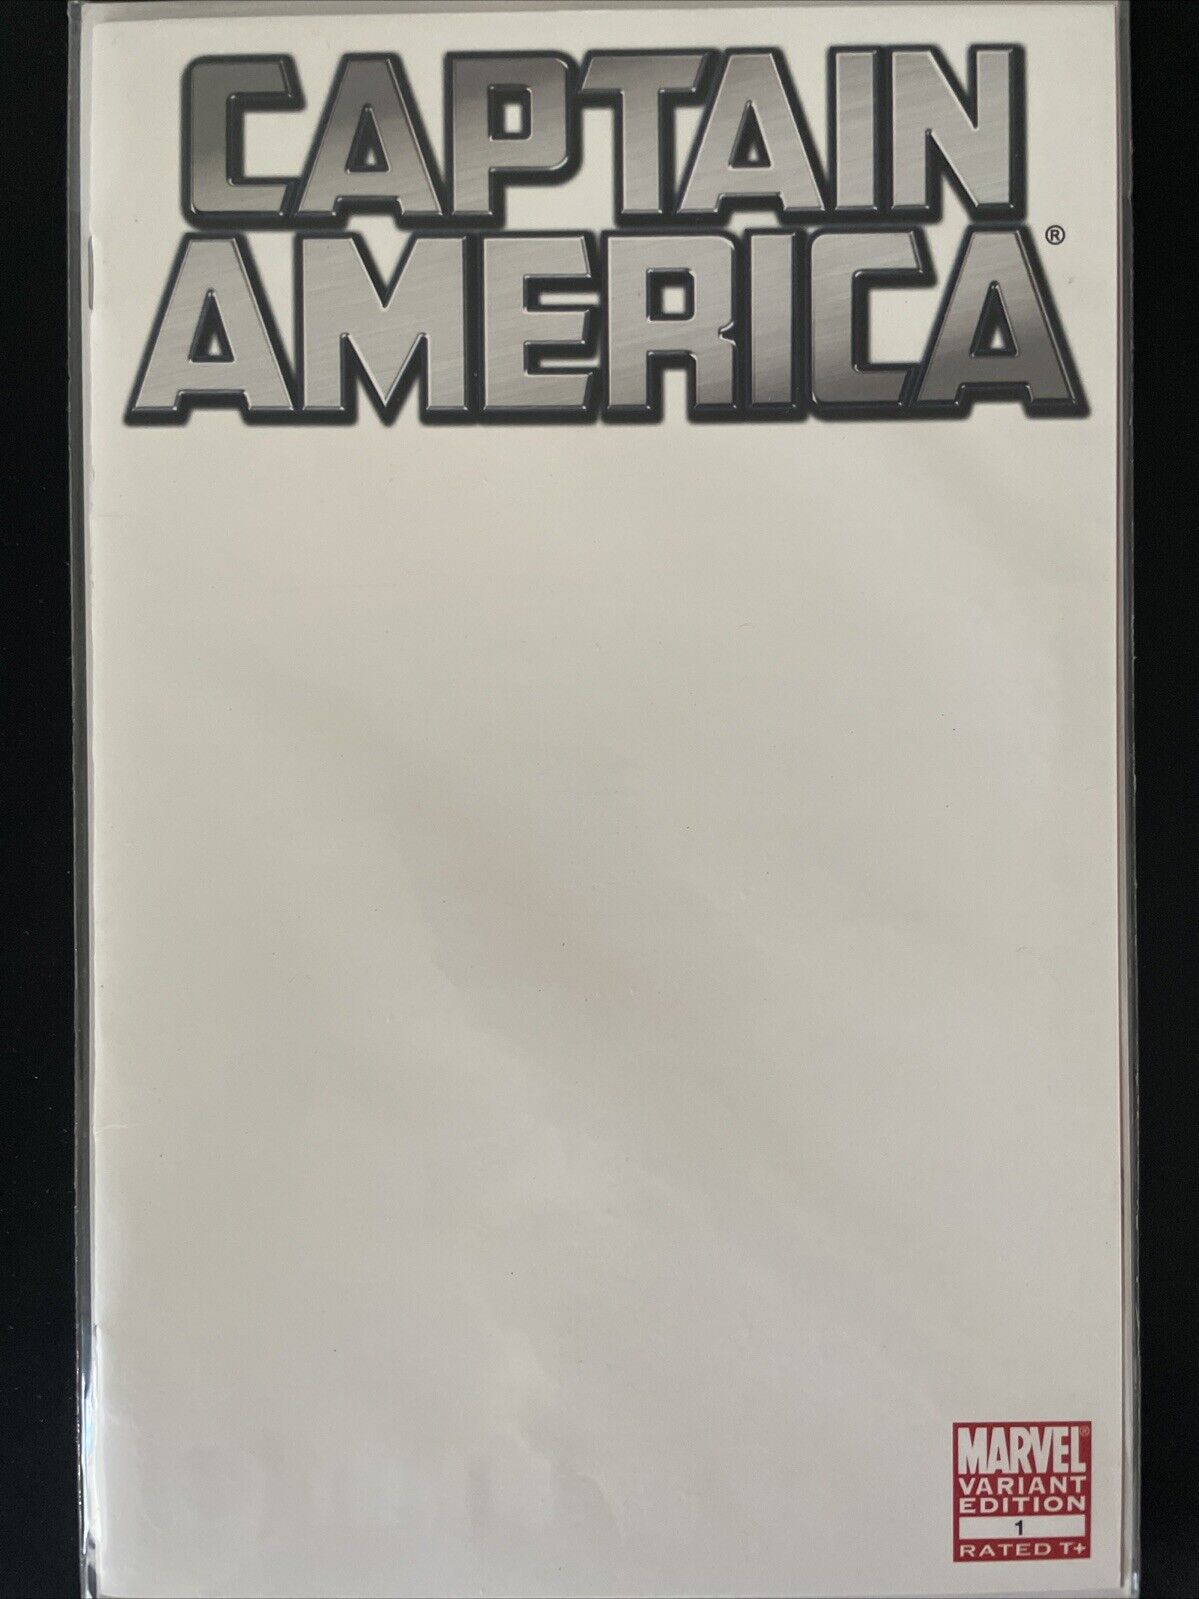 Captain America #1 (Marvel) Blank Variant Cover